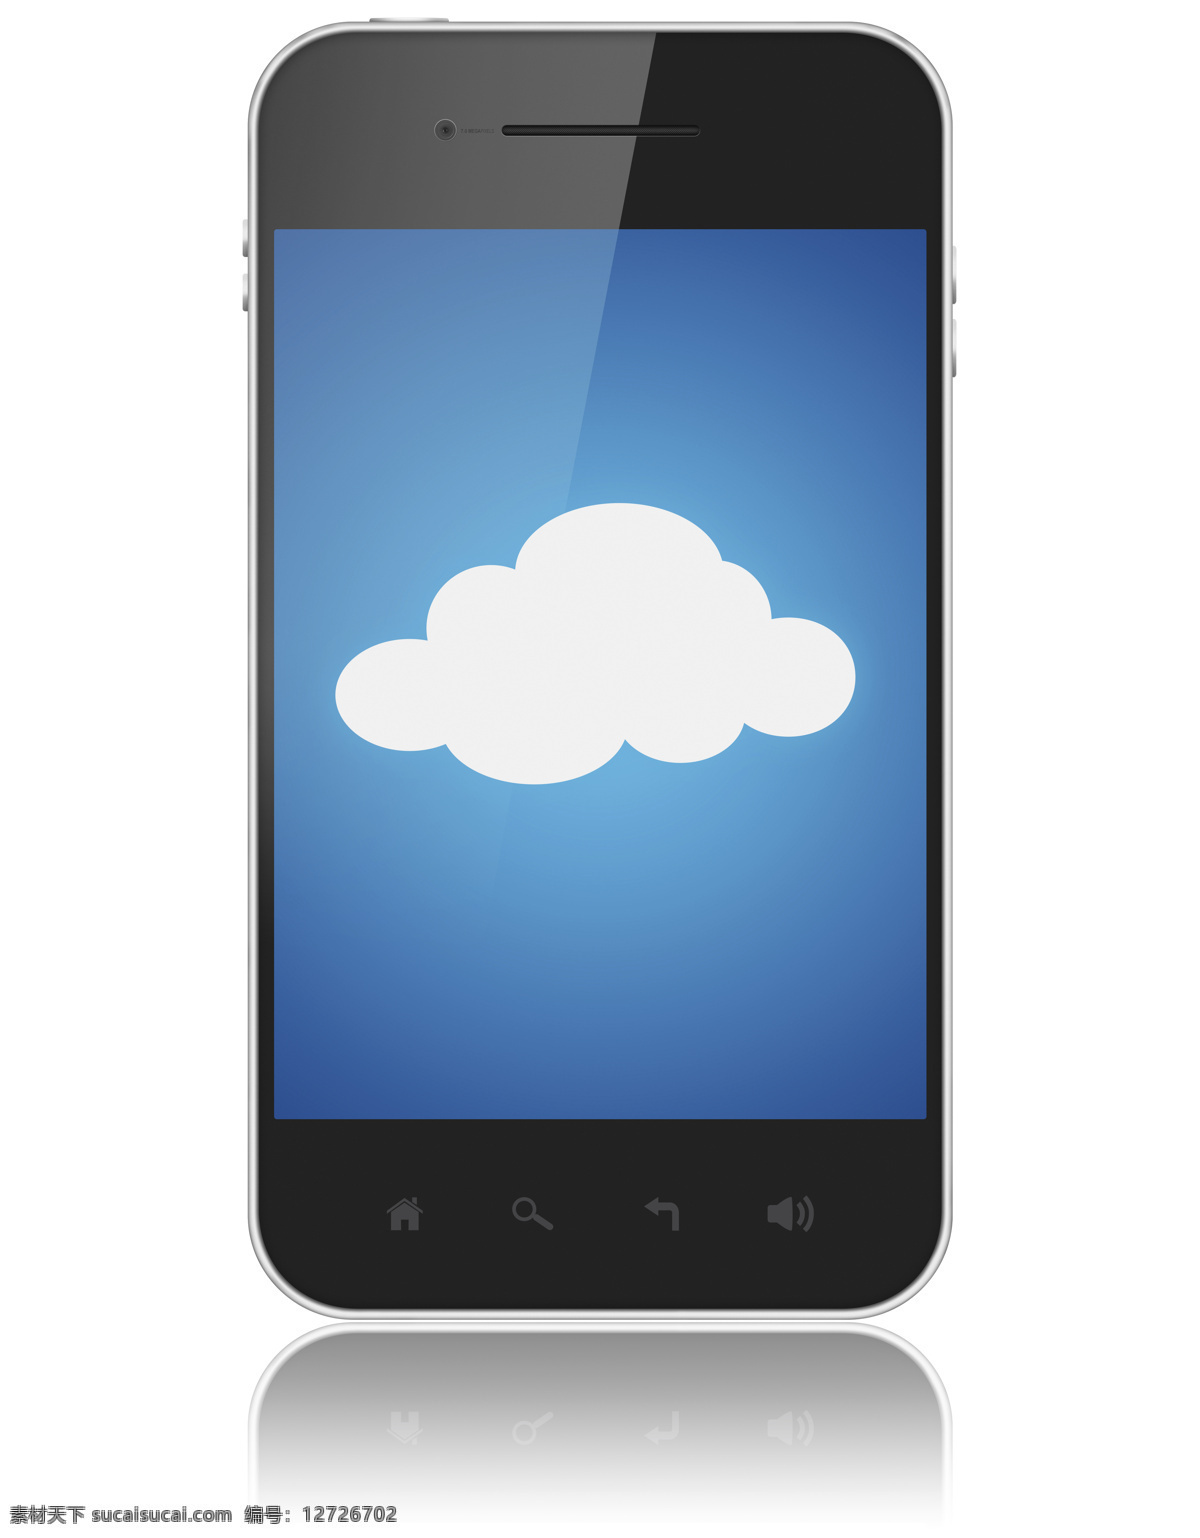 手机 里 云朵 手机里的云朵 云朵图案 电子产品 科技主题 手机图片 现代科技